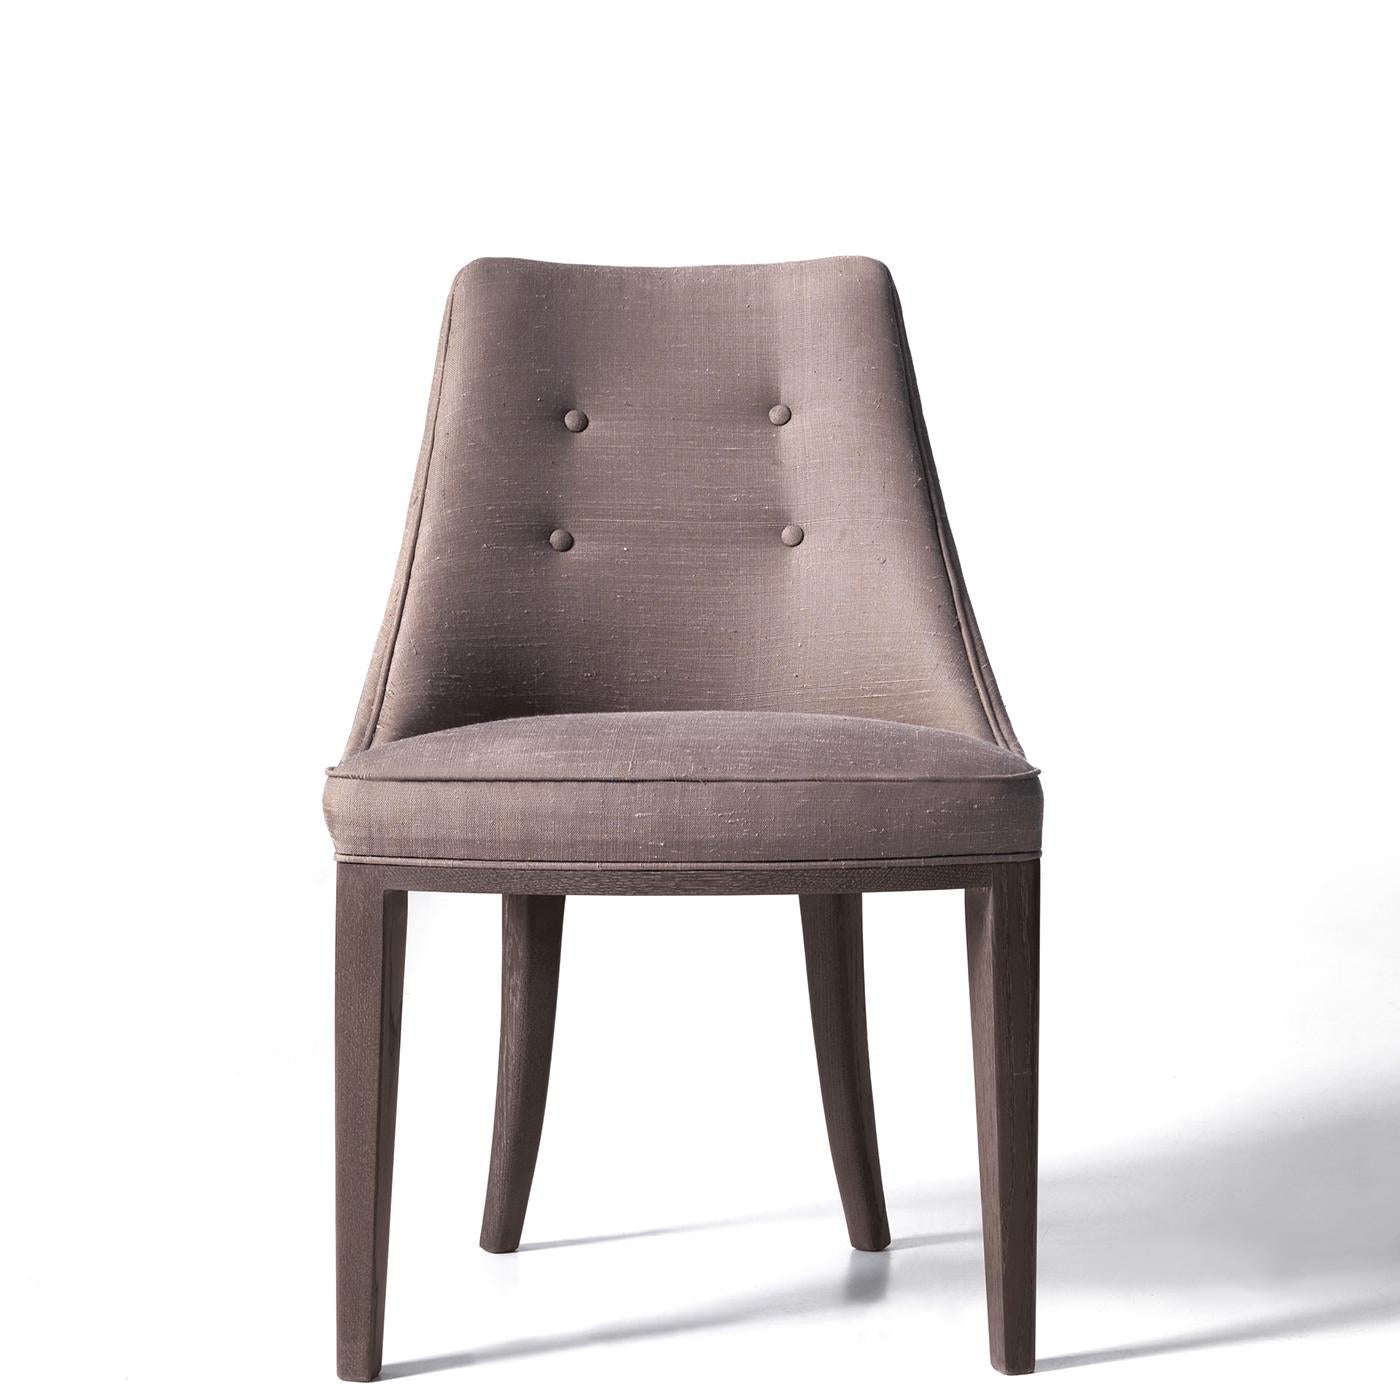 Un design cossu et accueillant caractérise cette chaise raffinée, dont la structure robuste en durmast est dotée d'une assise généreusement rembourrée et d'un dossier incurvé, tous deux recouverts de tissu gris avec de subtils accents de boutons.